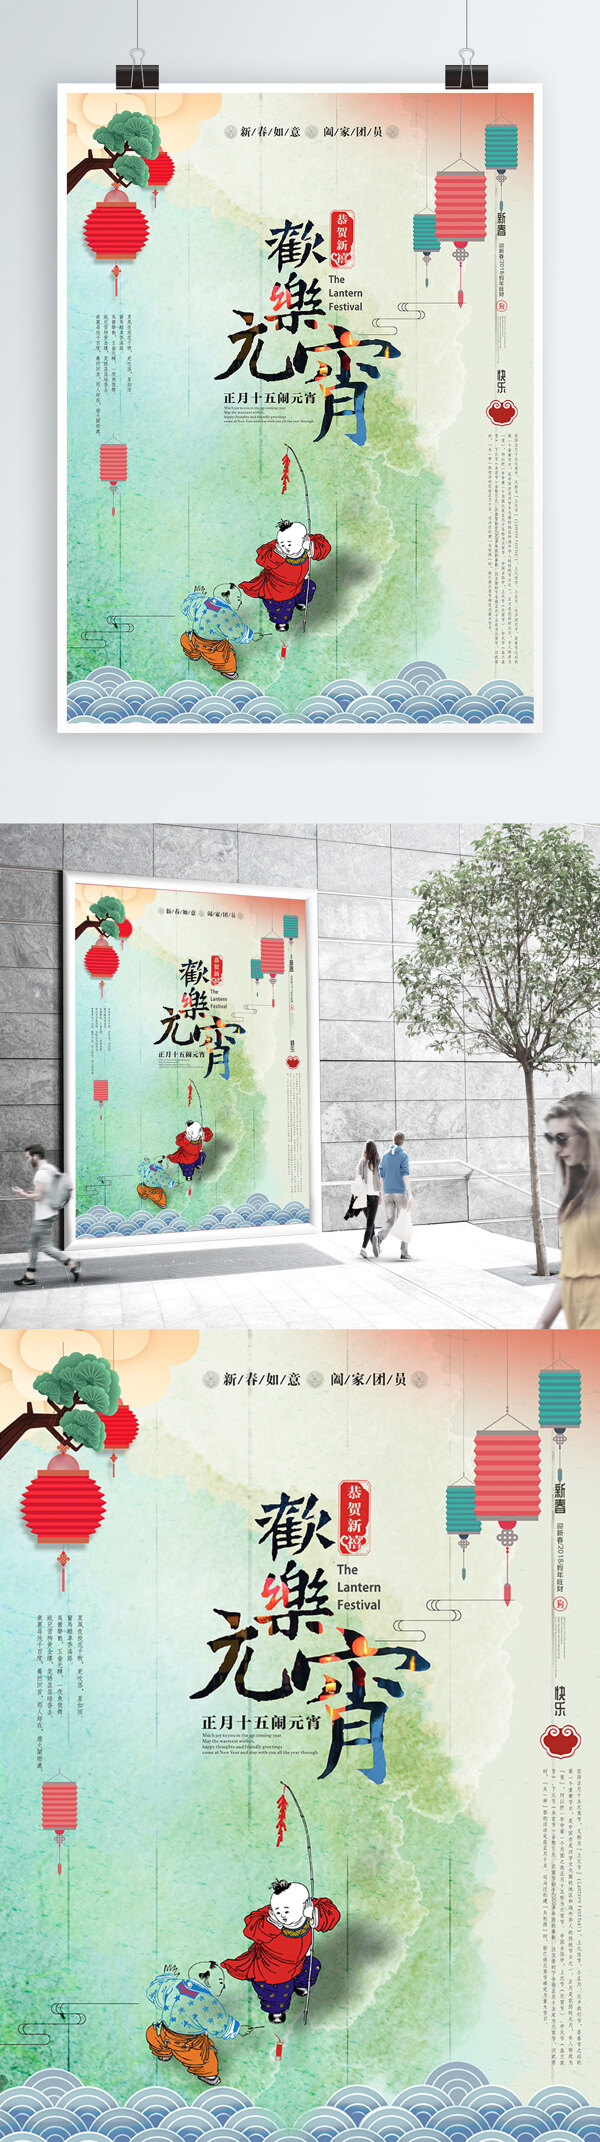 元宵节欢乐元宵中国风海报cdr模板